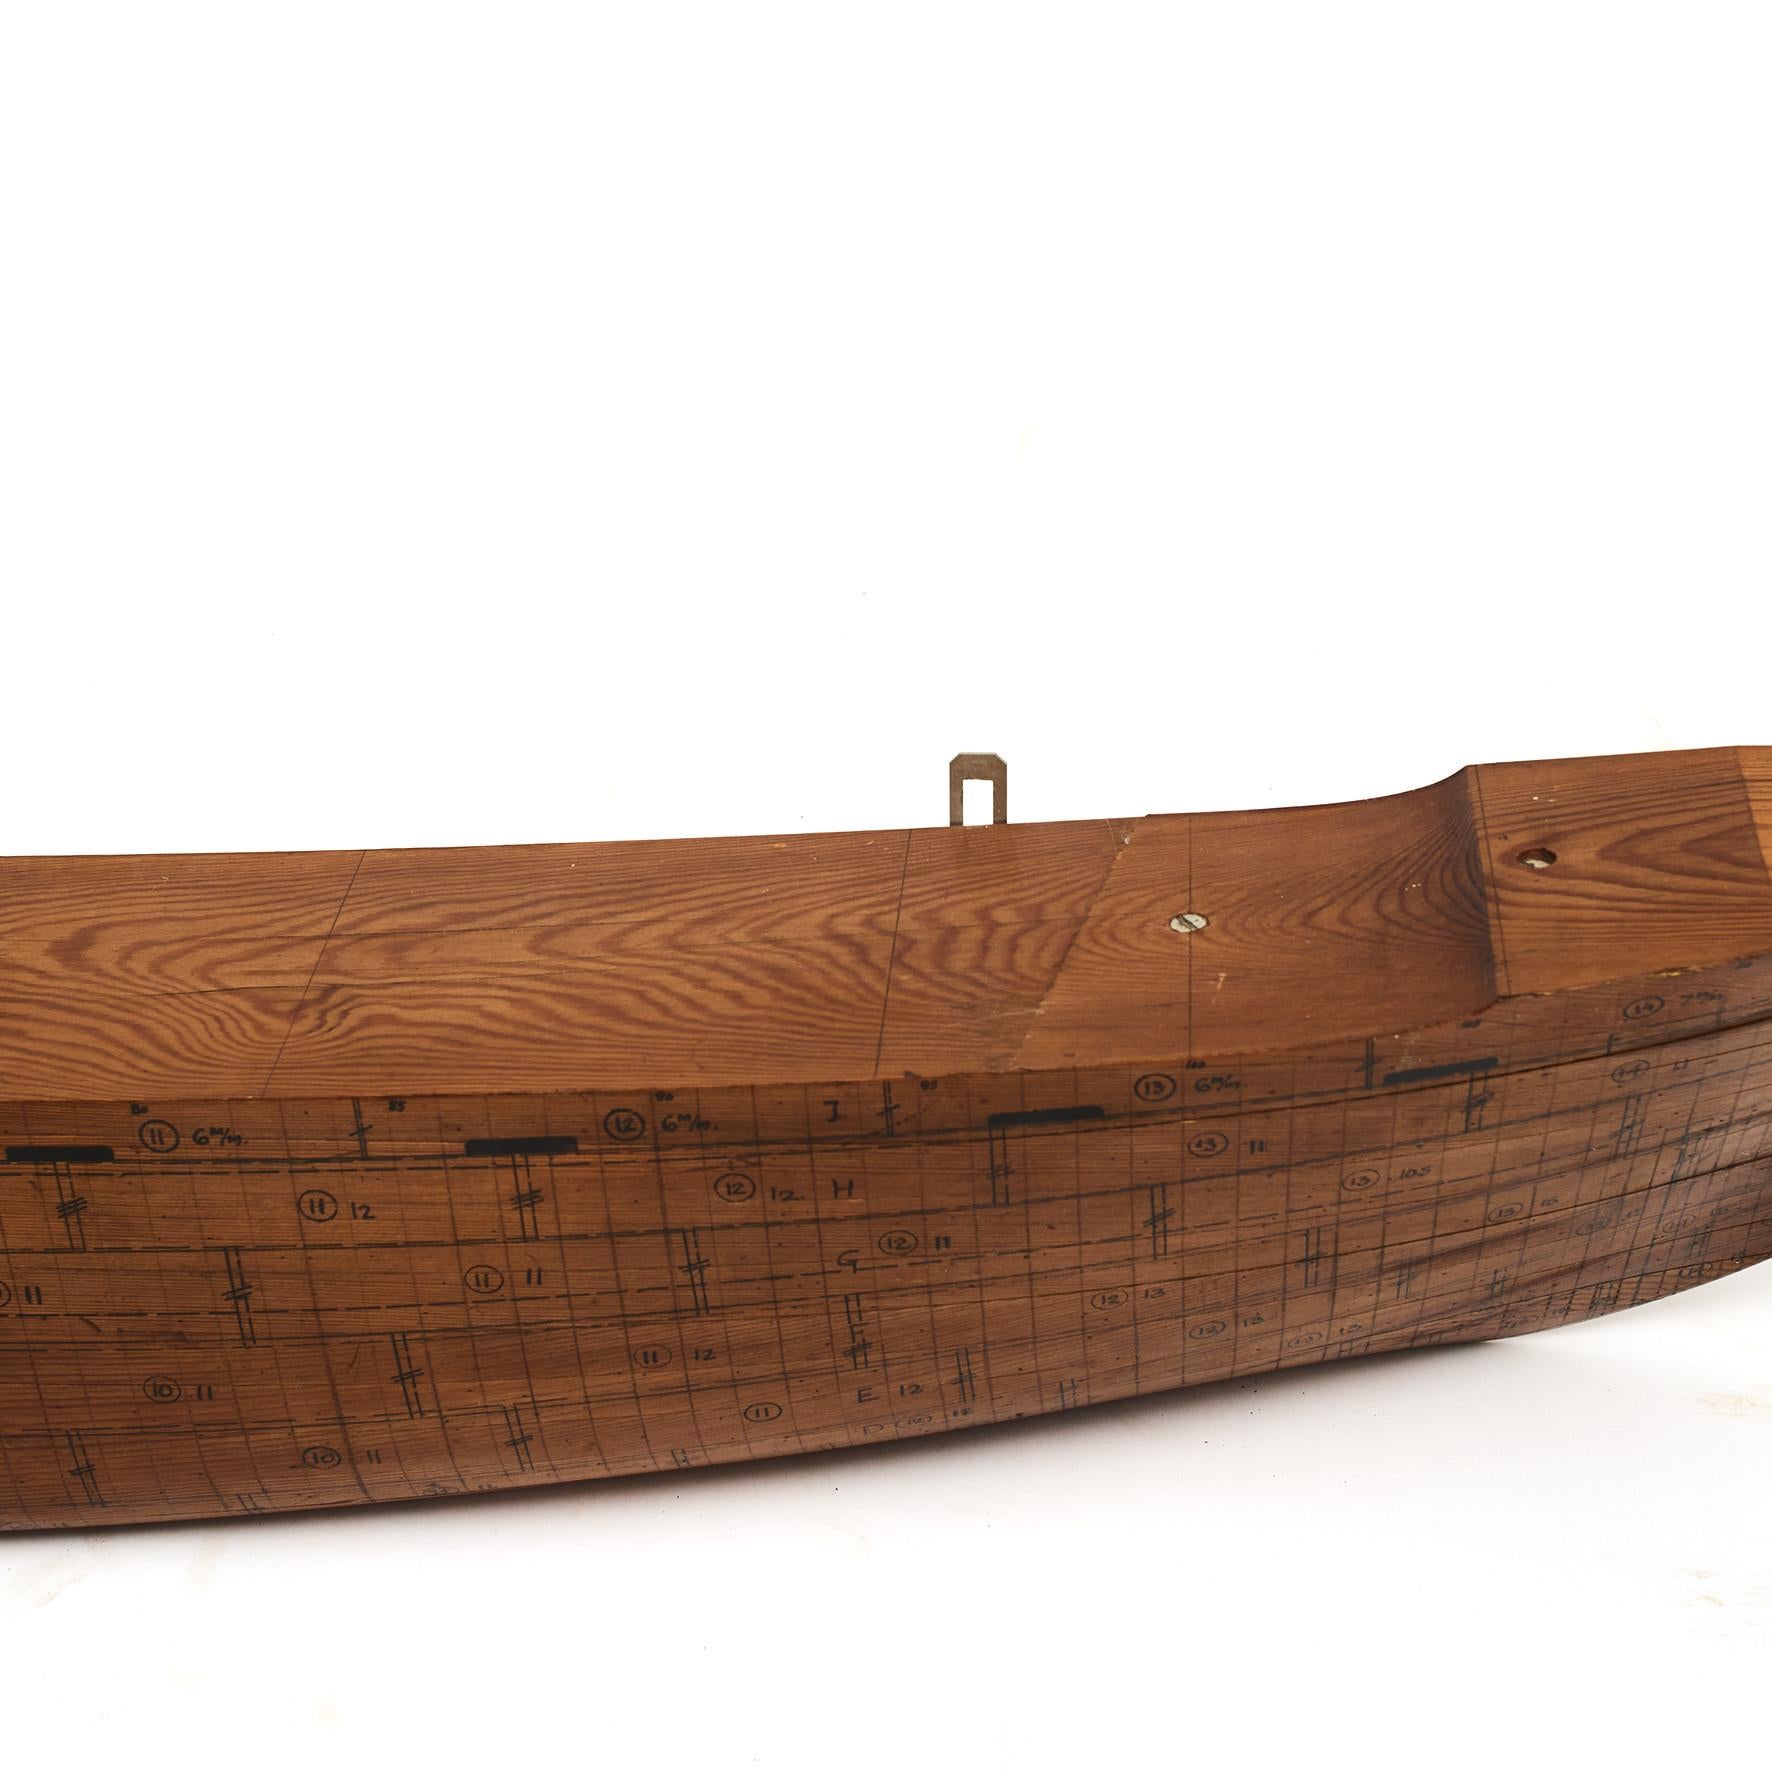 Grand modèle de demi-coque d'un constructeur naval danois.
Construit en bois de pin annoté avec des détails de construction.
Provenant d'un chantier naval danois, vers les années 1920-1930.
Etat d'origine intact, bonne patine.